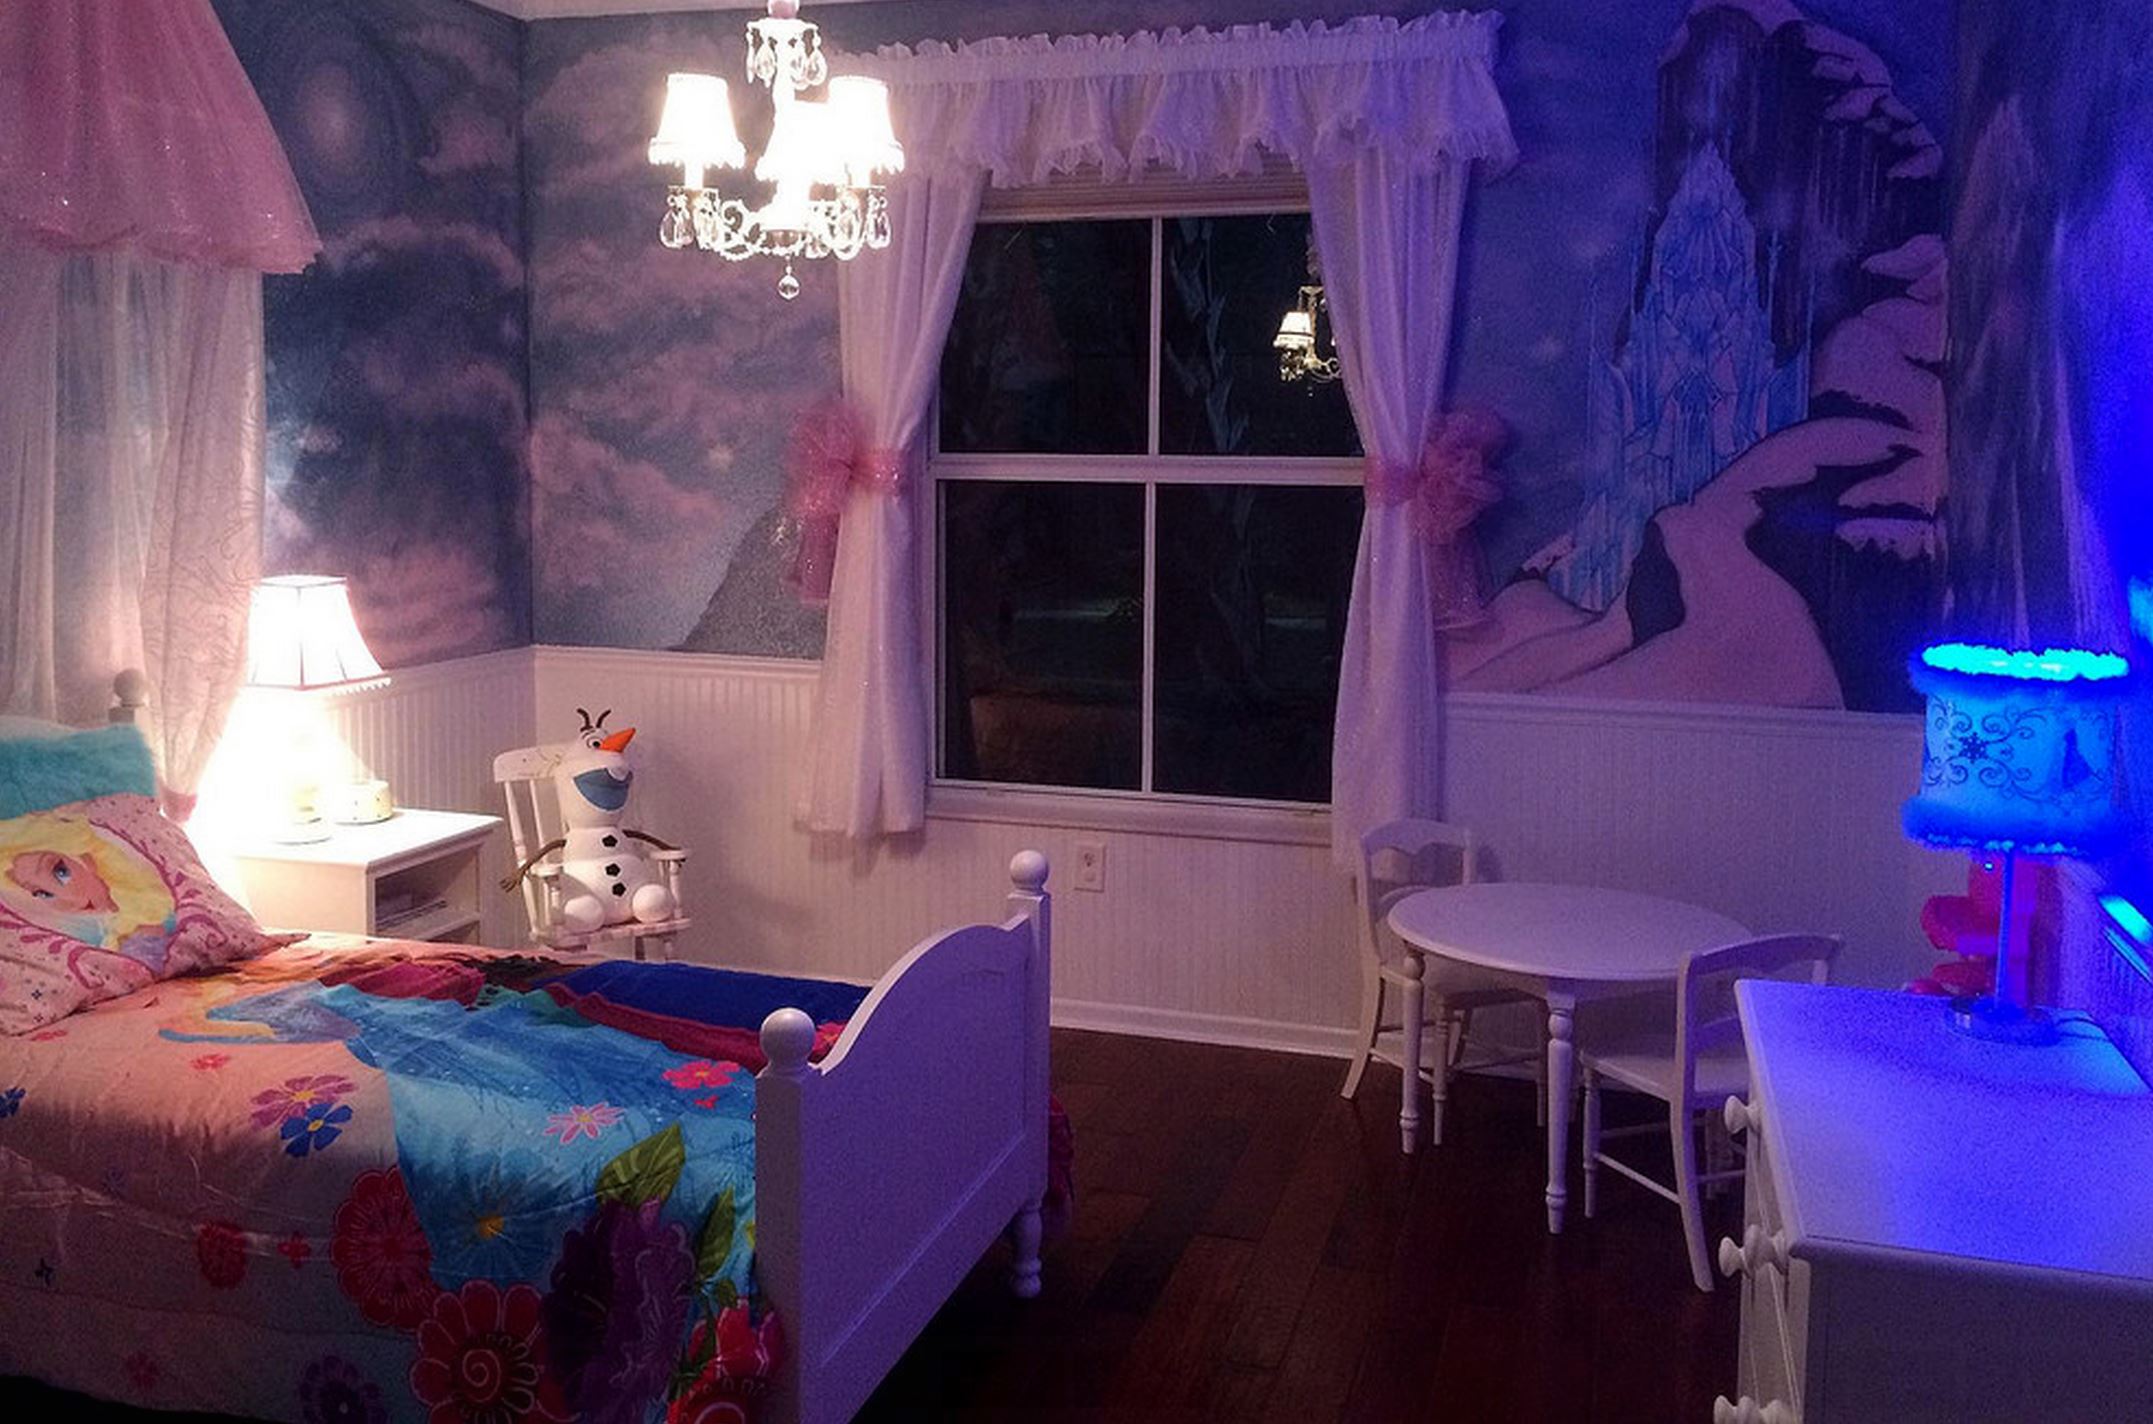 frozen wallpaper for bedroom,room,bed,property,purple,furniture